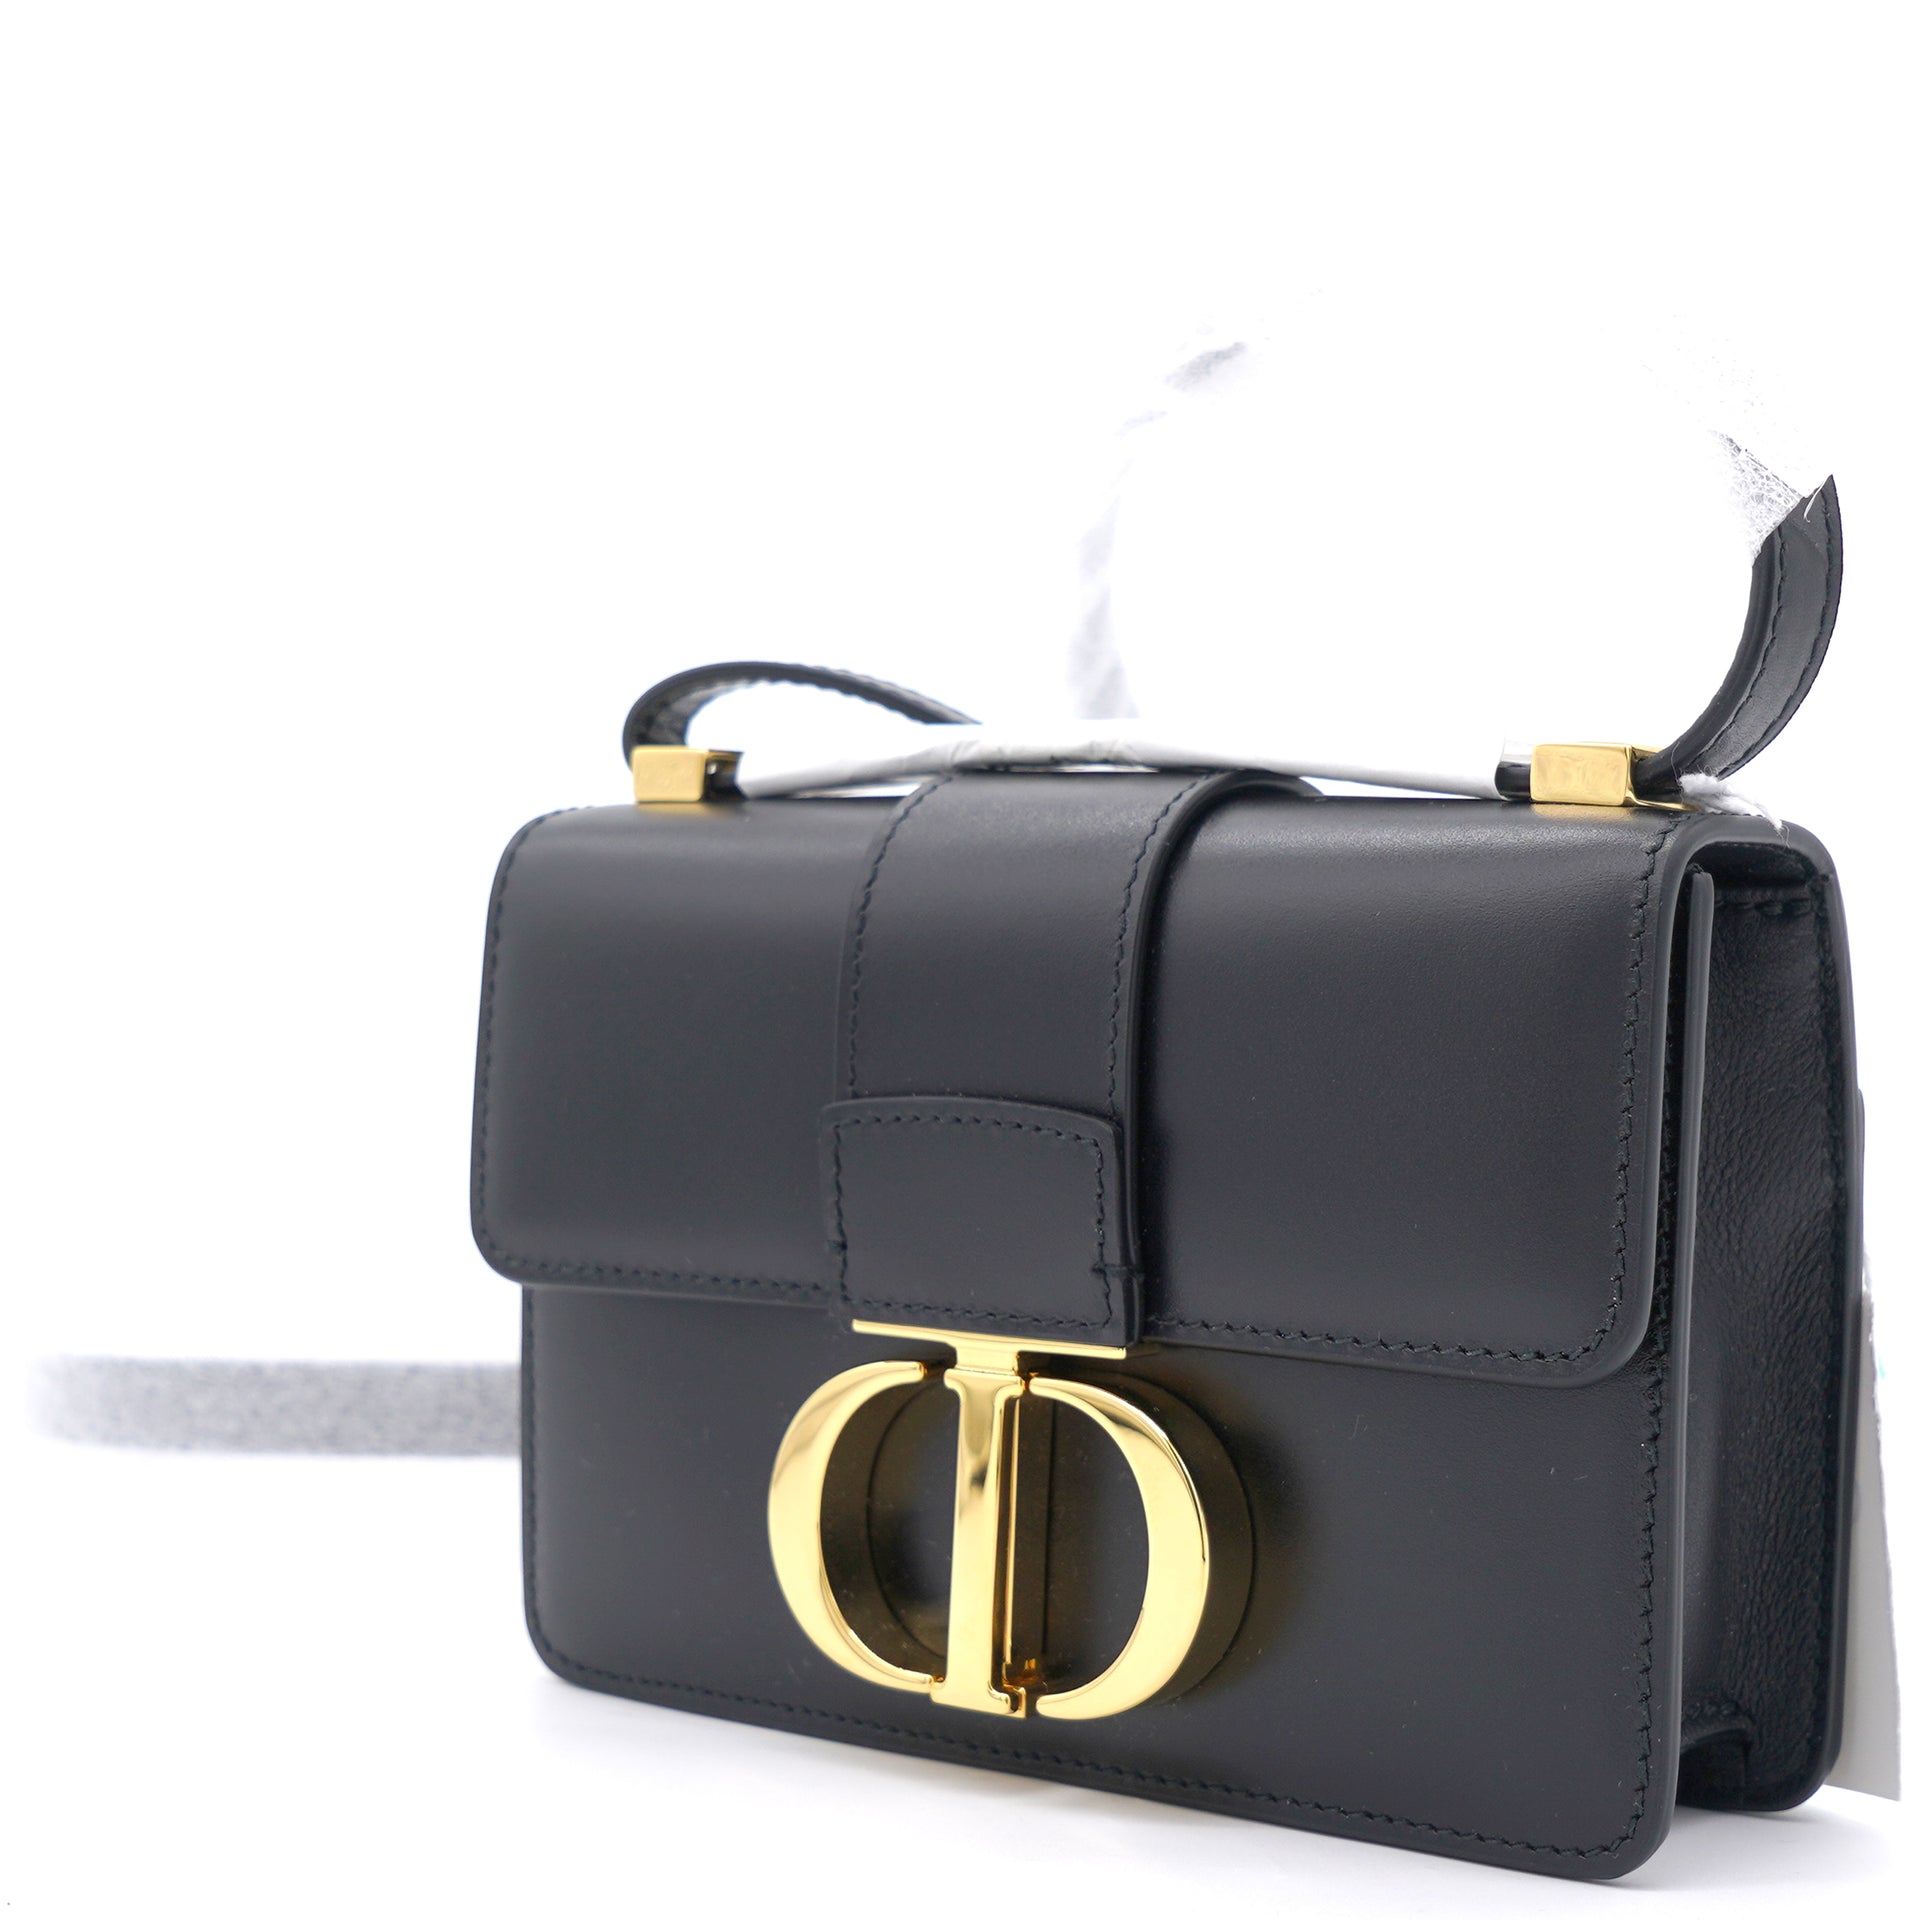 30 Montaigne Box Bag Blue Dior Oblique Jacquard  DIOR US